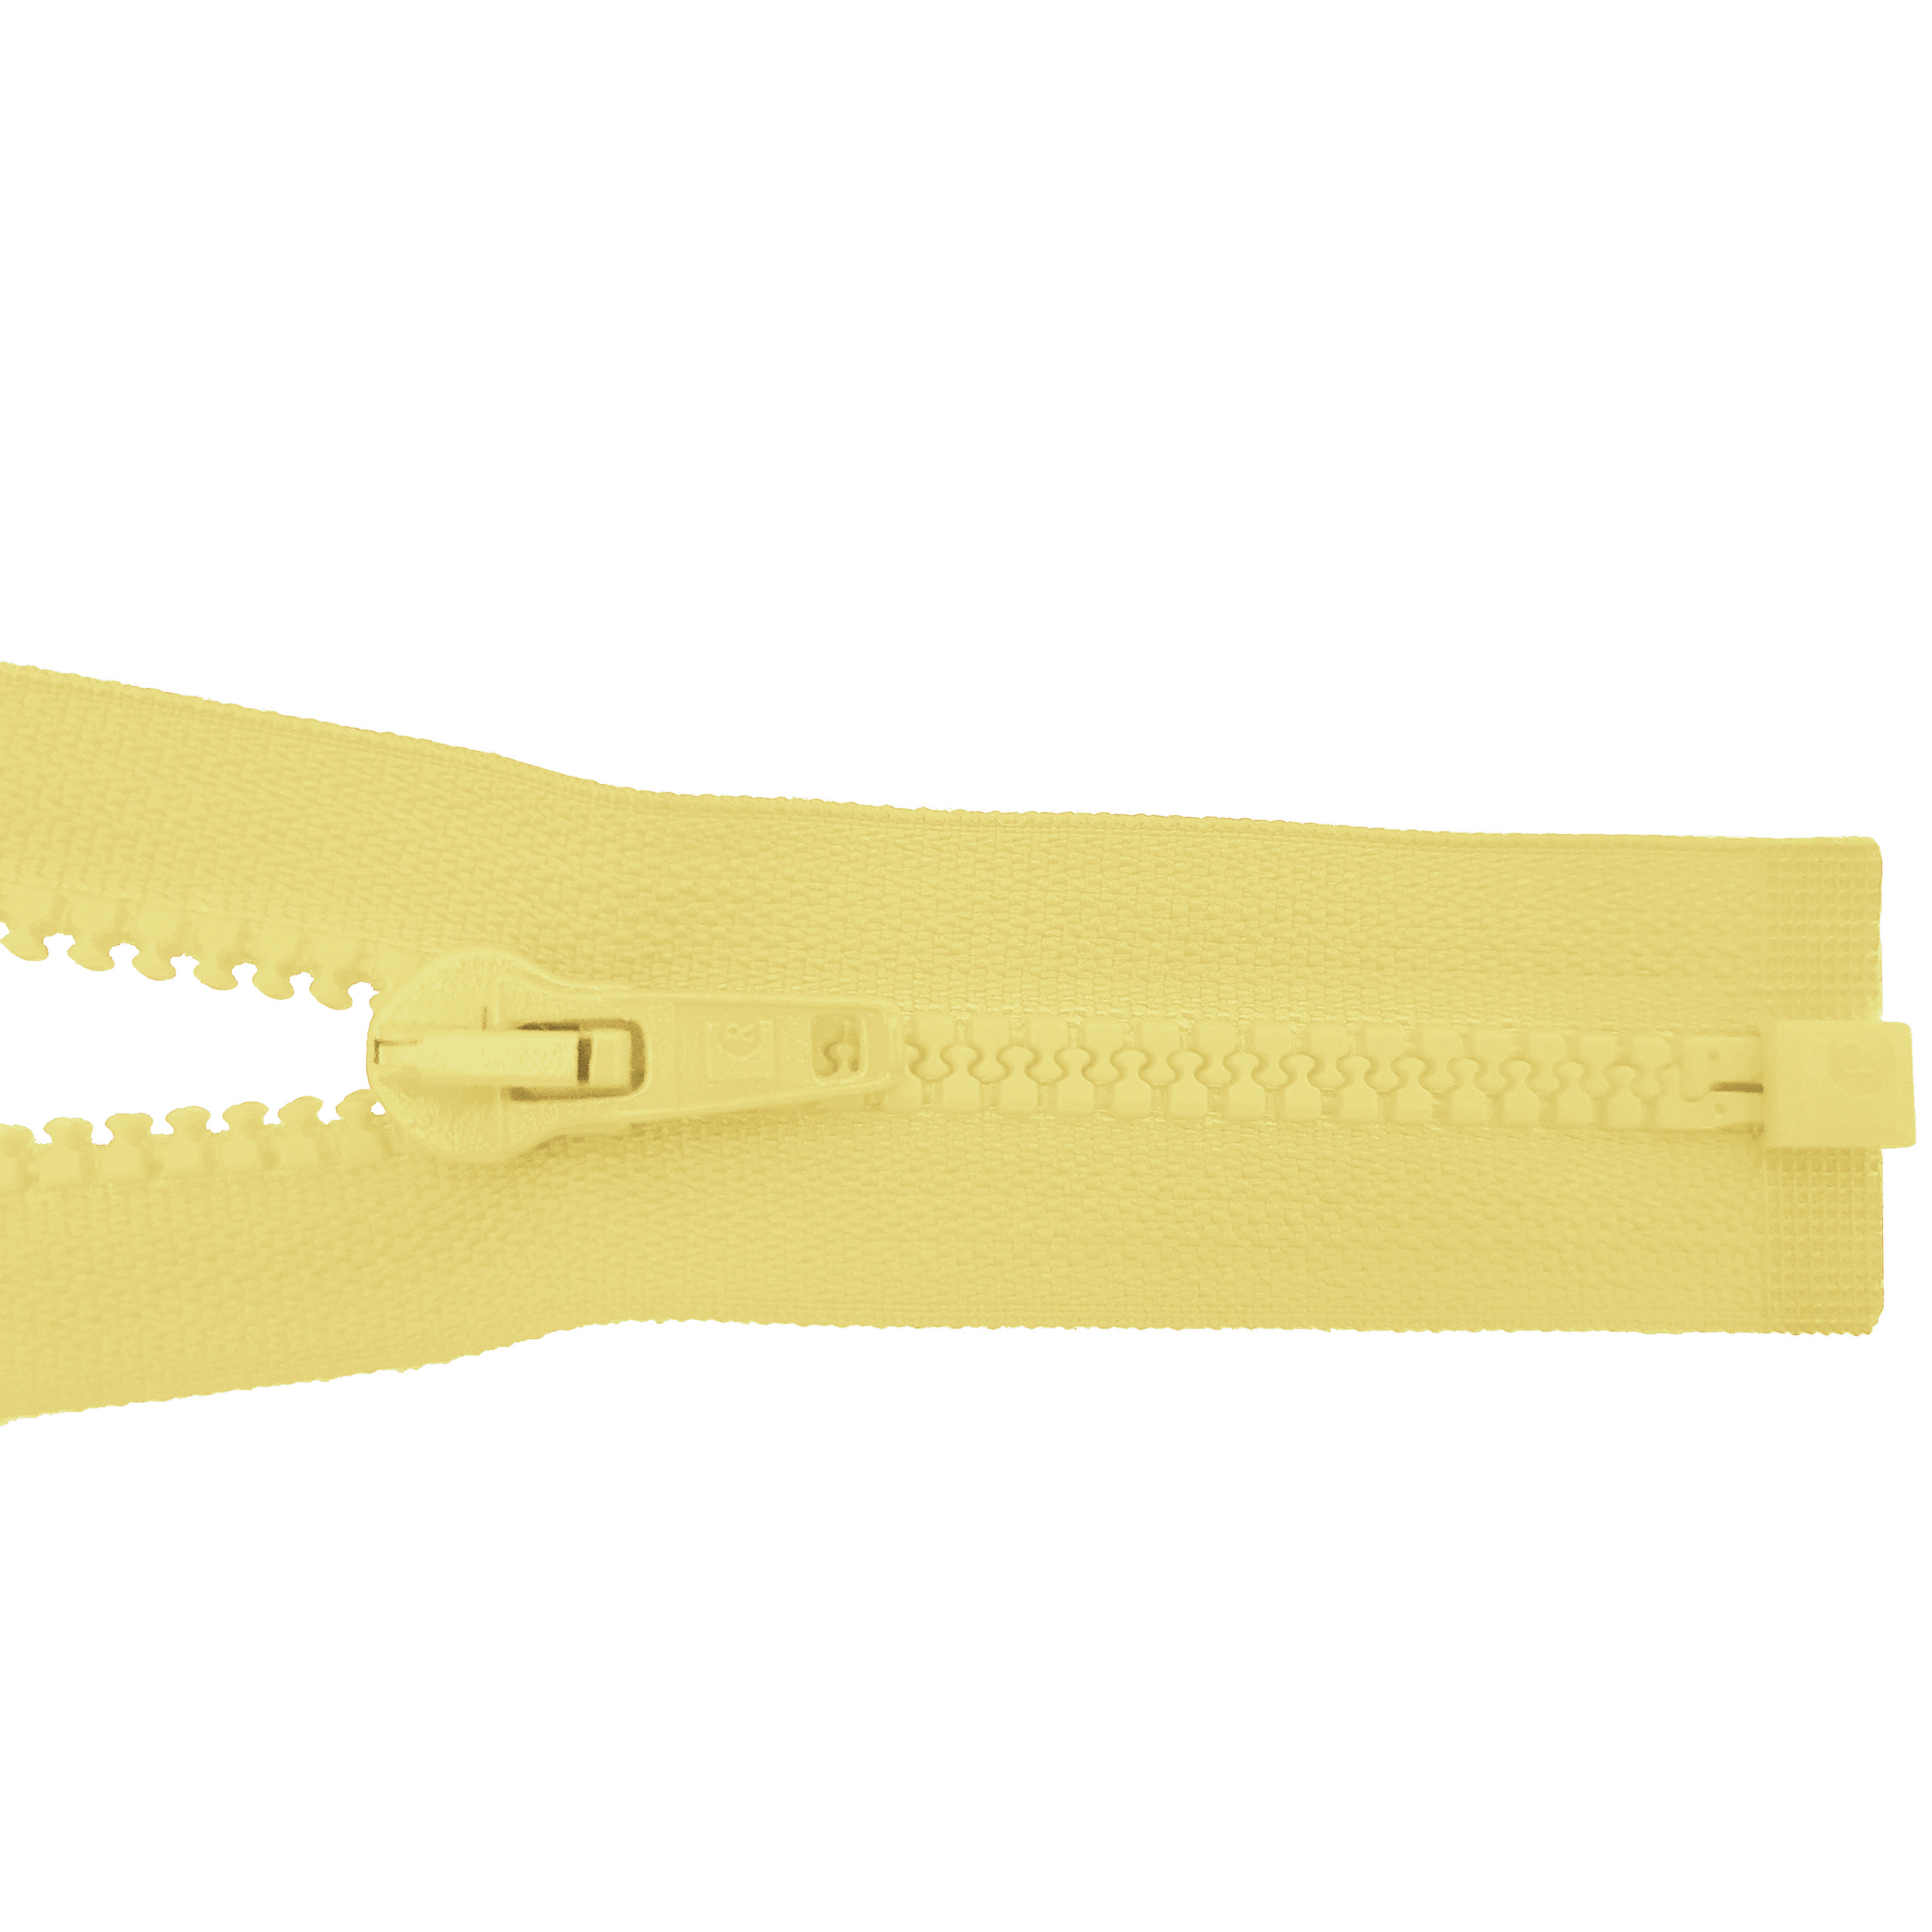 Reißverschluss 80cm, teilbar, Kstoff Zähne breit, hellgelb, hochwertiger Marken-Reißverschluss von Rubi/Barcelona